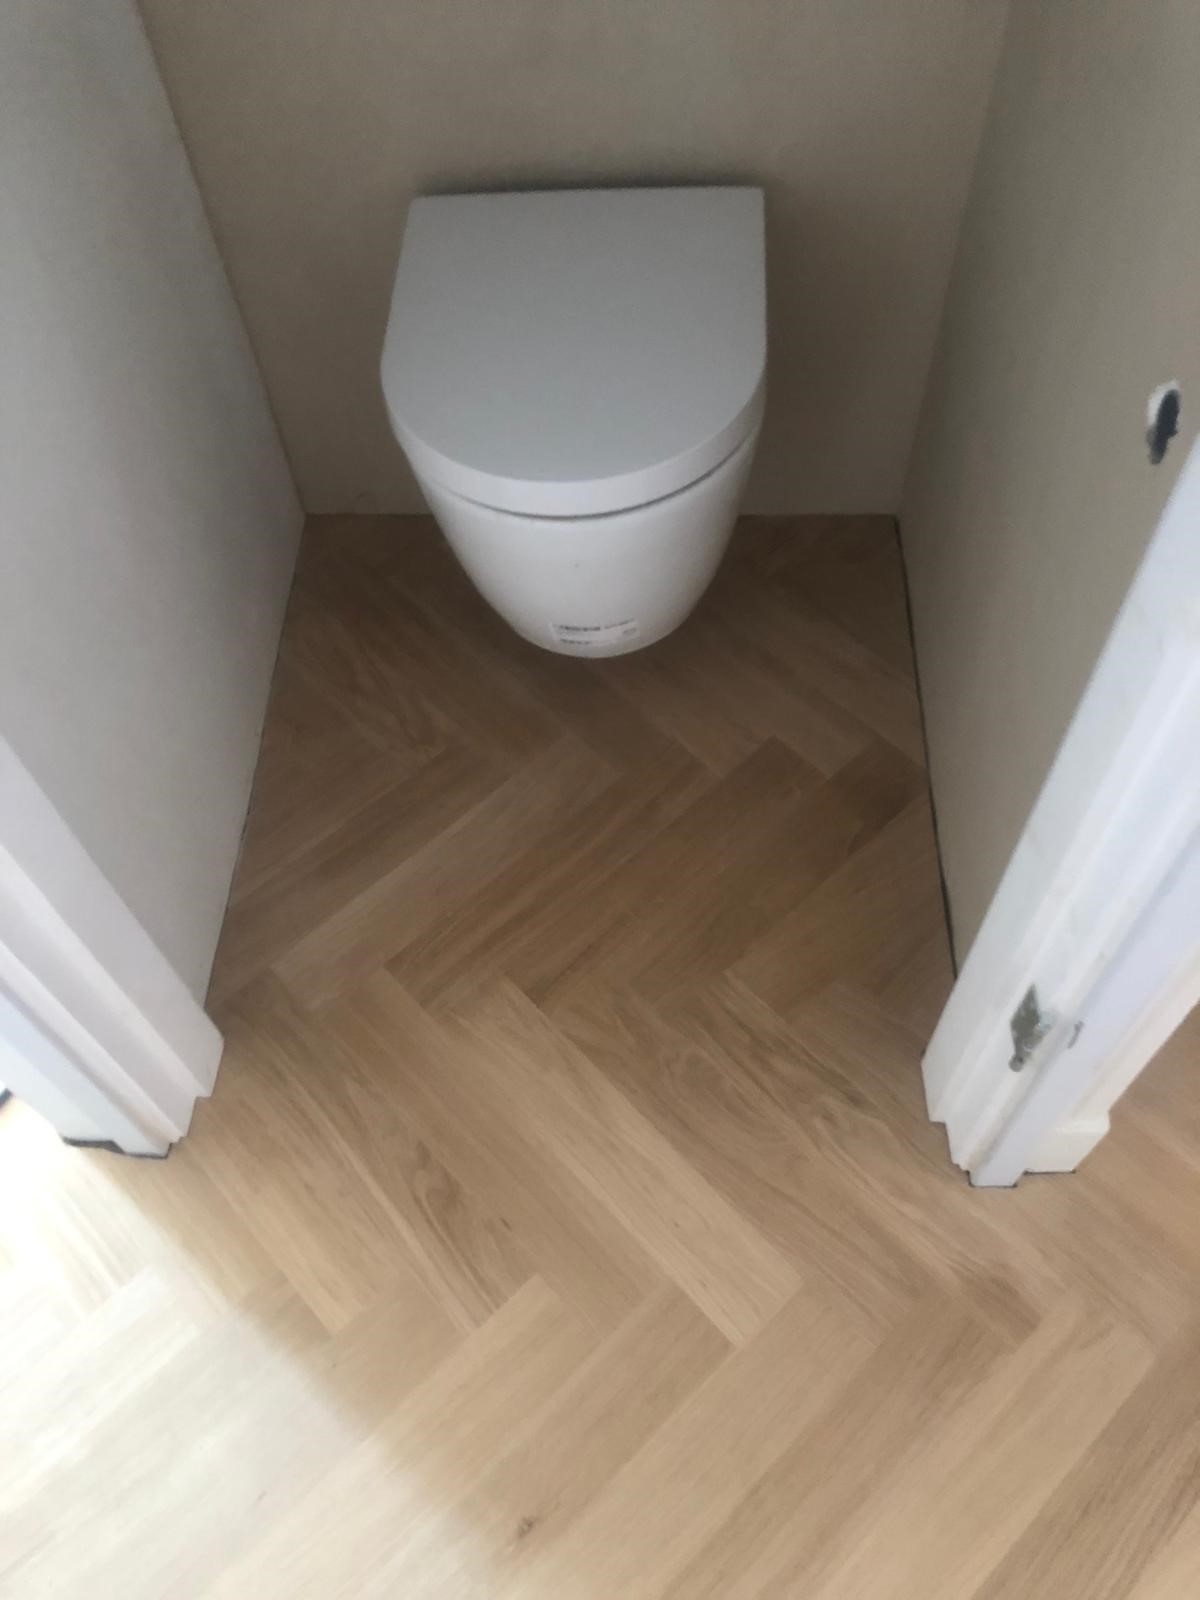 visgraat_toilet.jpg